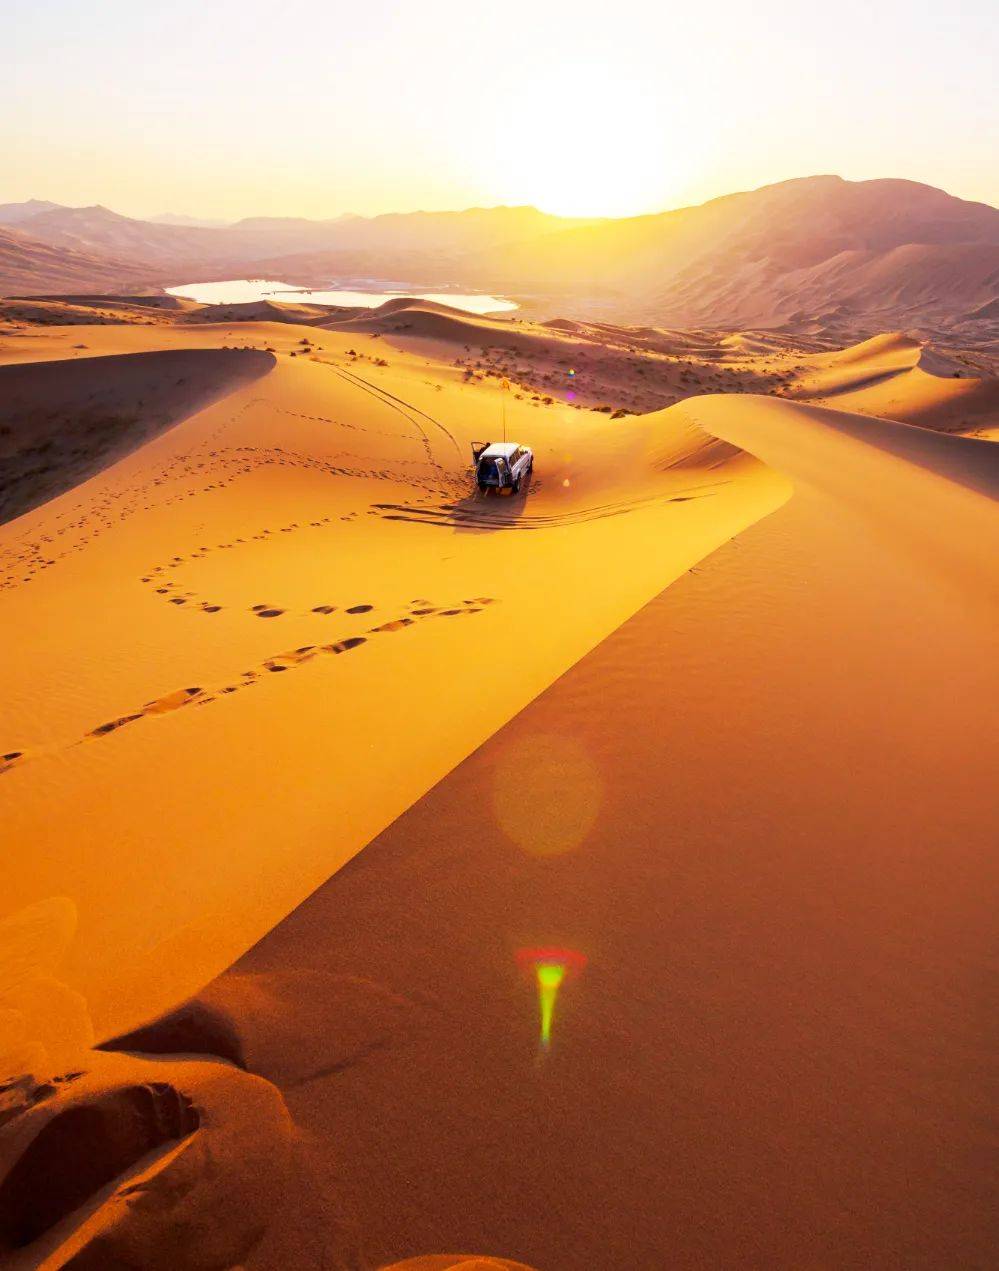 国内顶级野奢玩法,穿越最美沙漠巴丹吉林,新疆古丝绸秘境